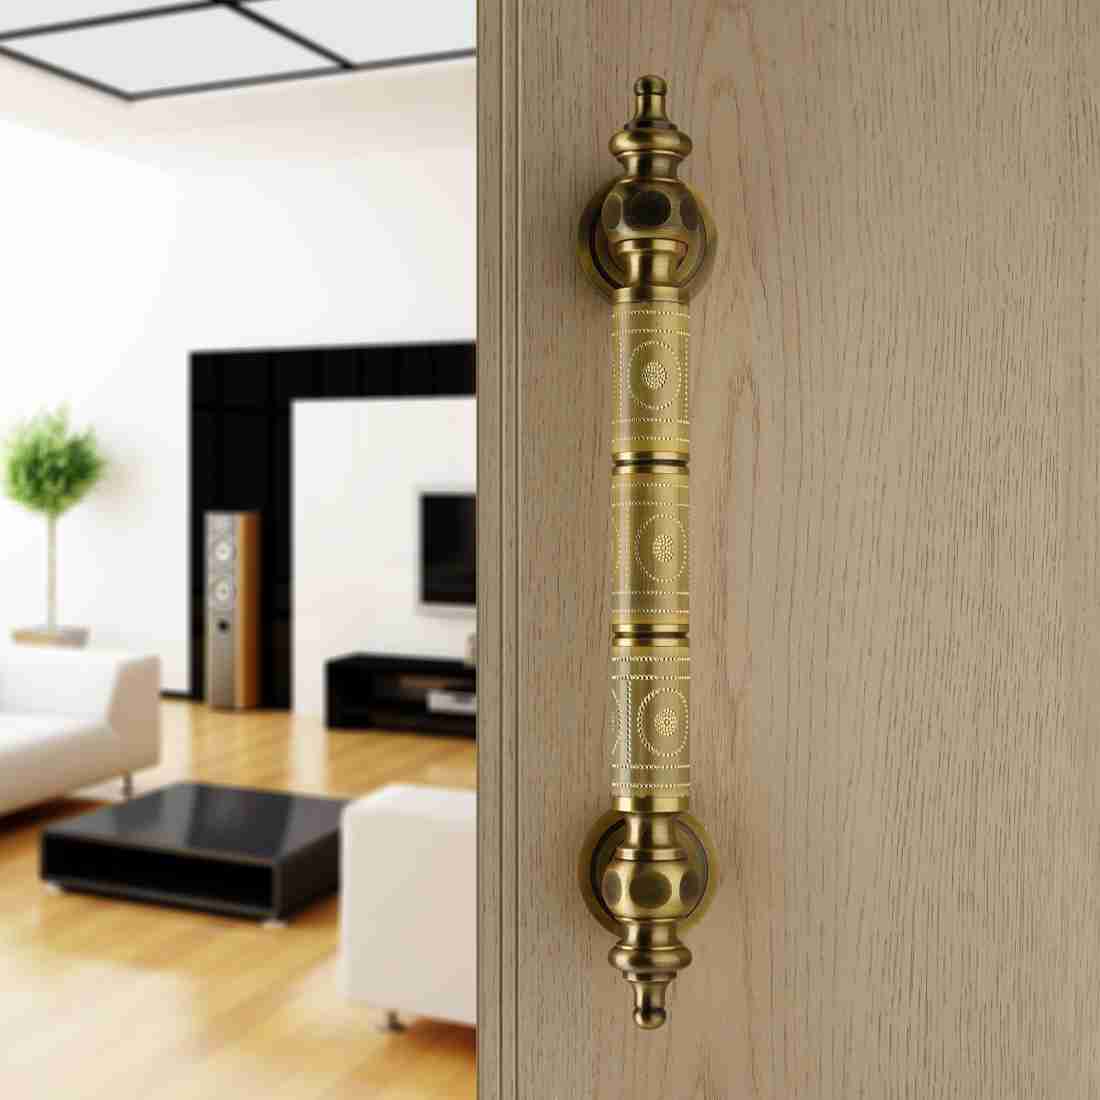 Plantex Altros Main Door Handle/Door & Home Decor/14 Inch Main Door  Handle/Door Pull Push Handle - Pack of 1 (106 - Black & Gold)